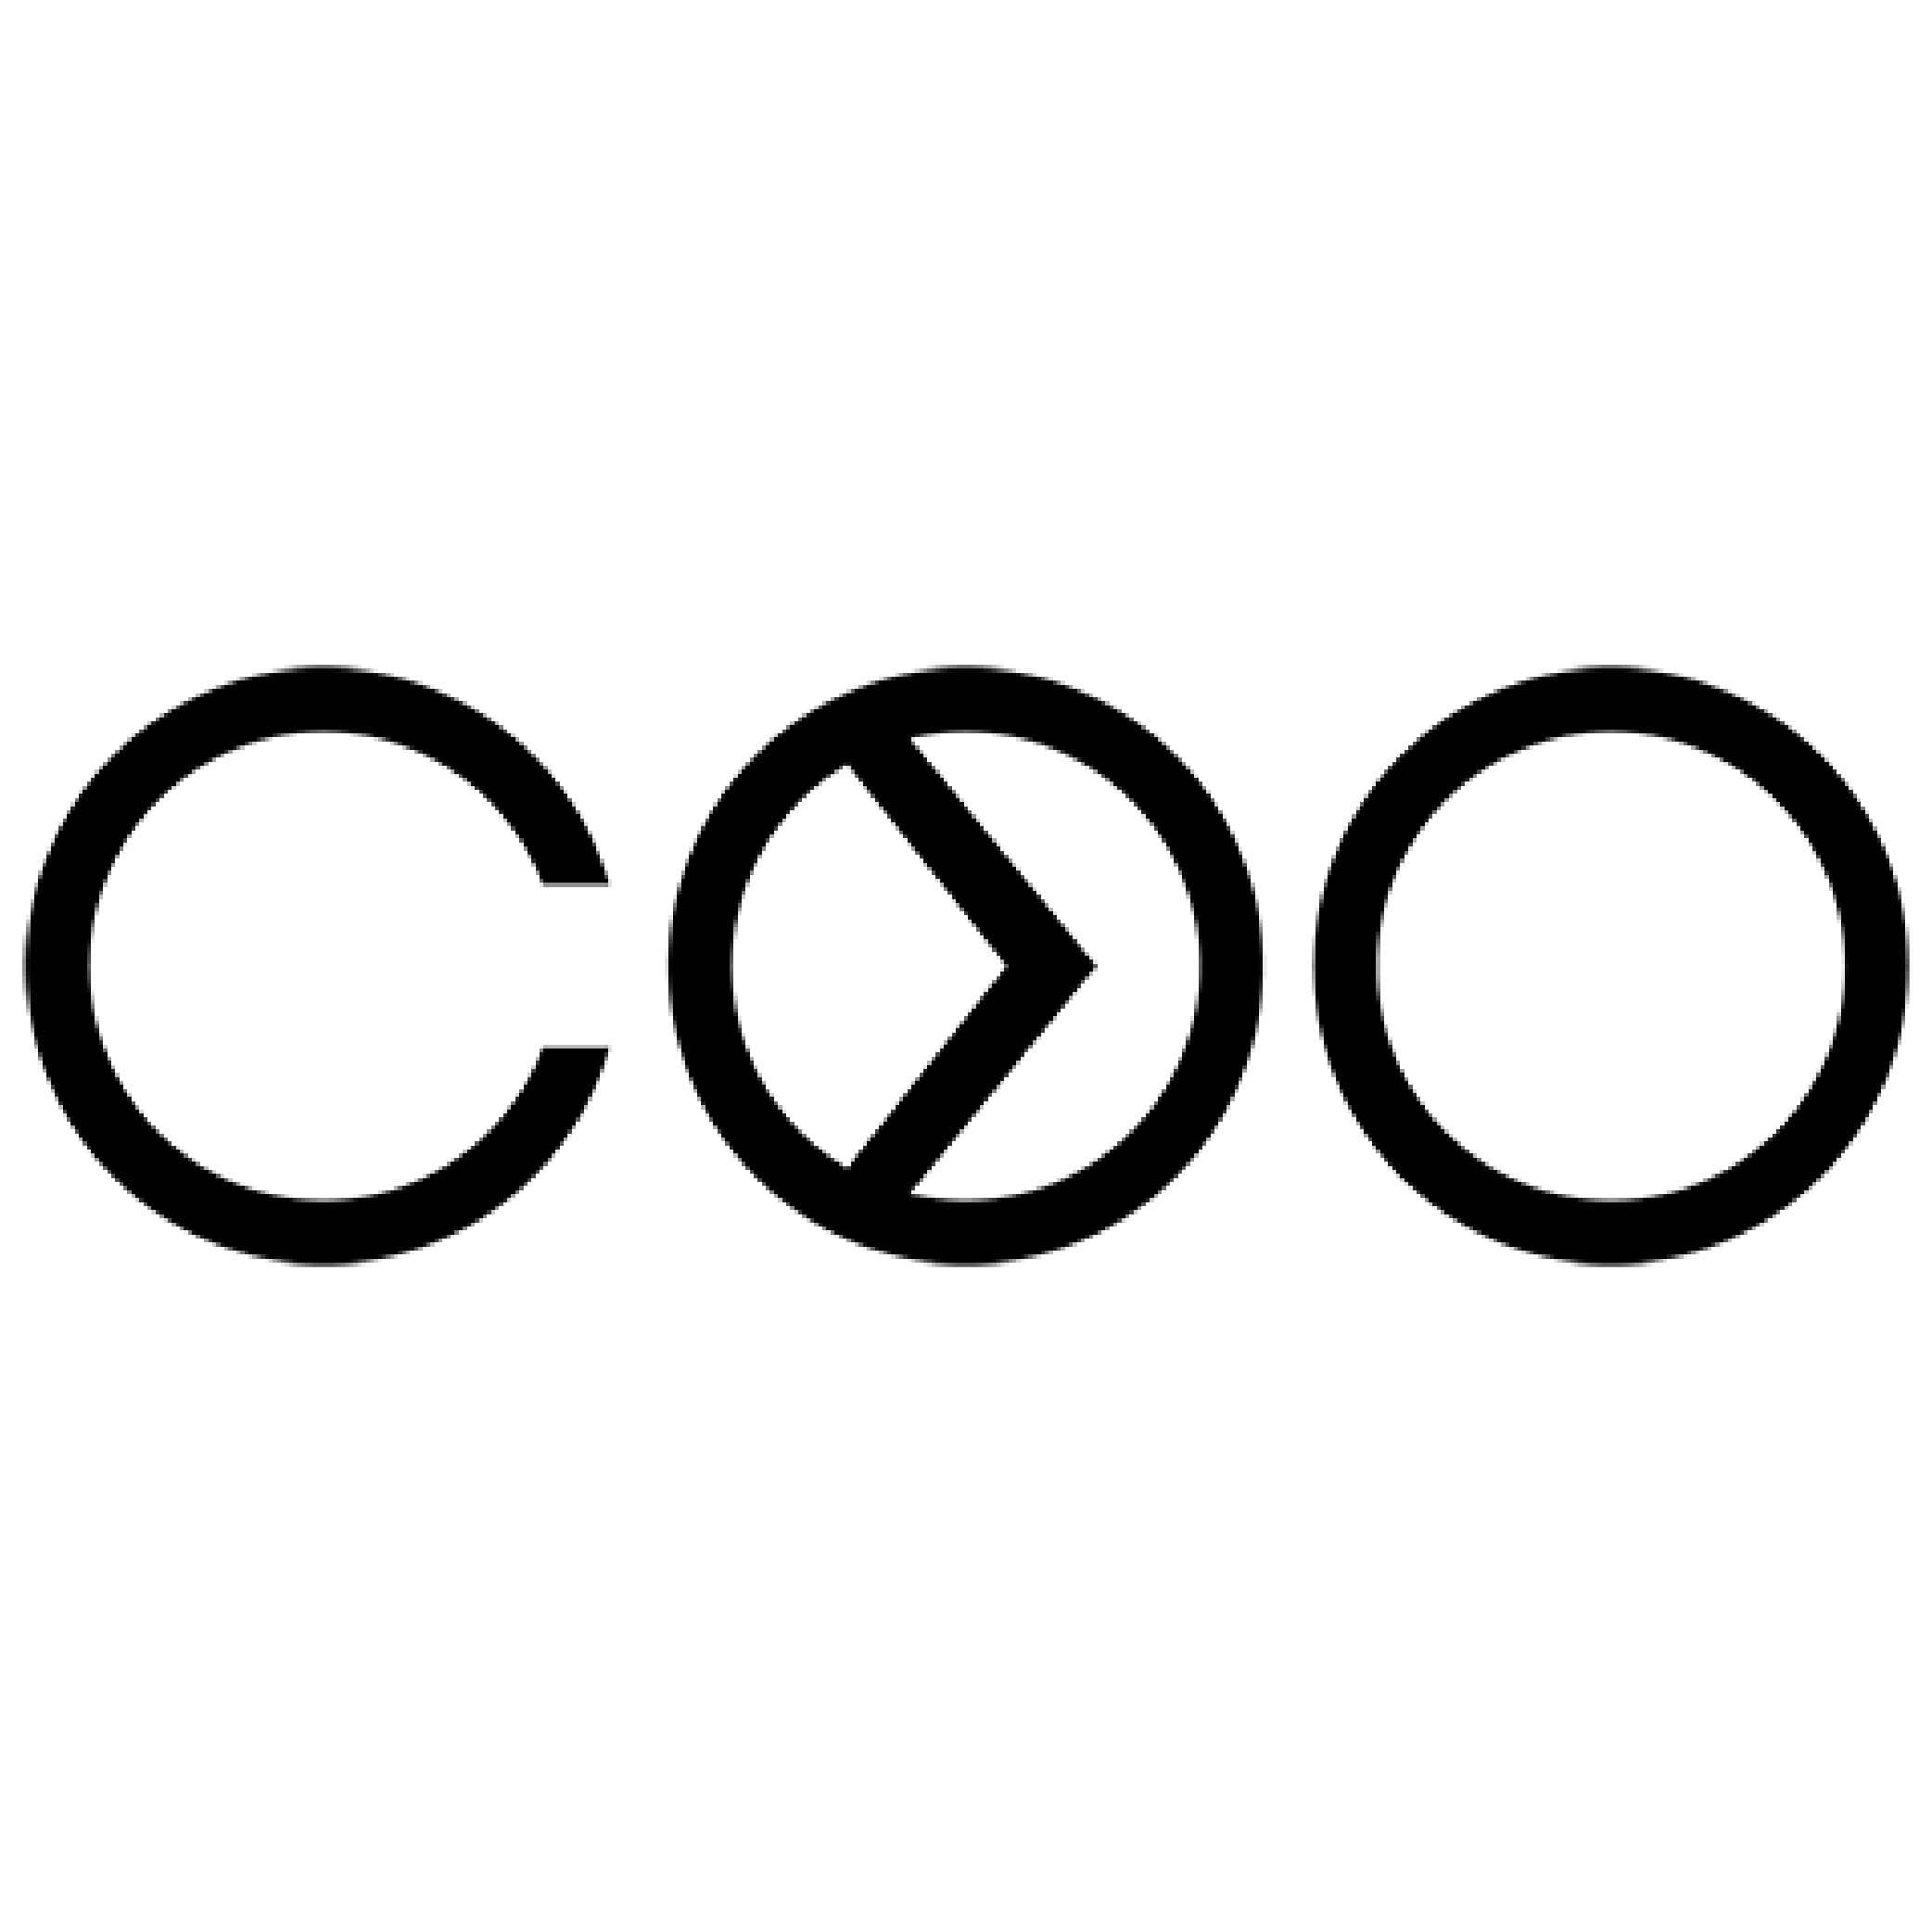 "логотип бренда Coo (Коо)"